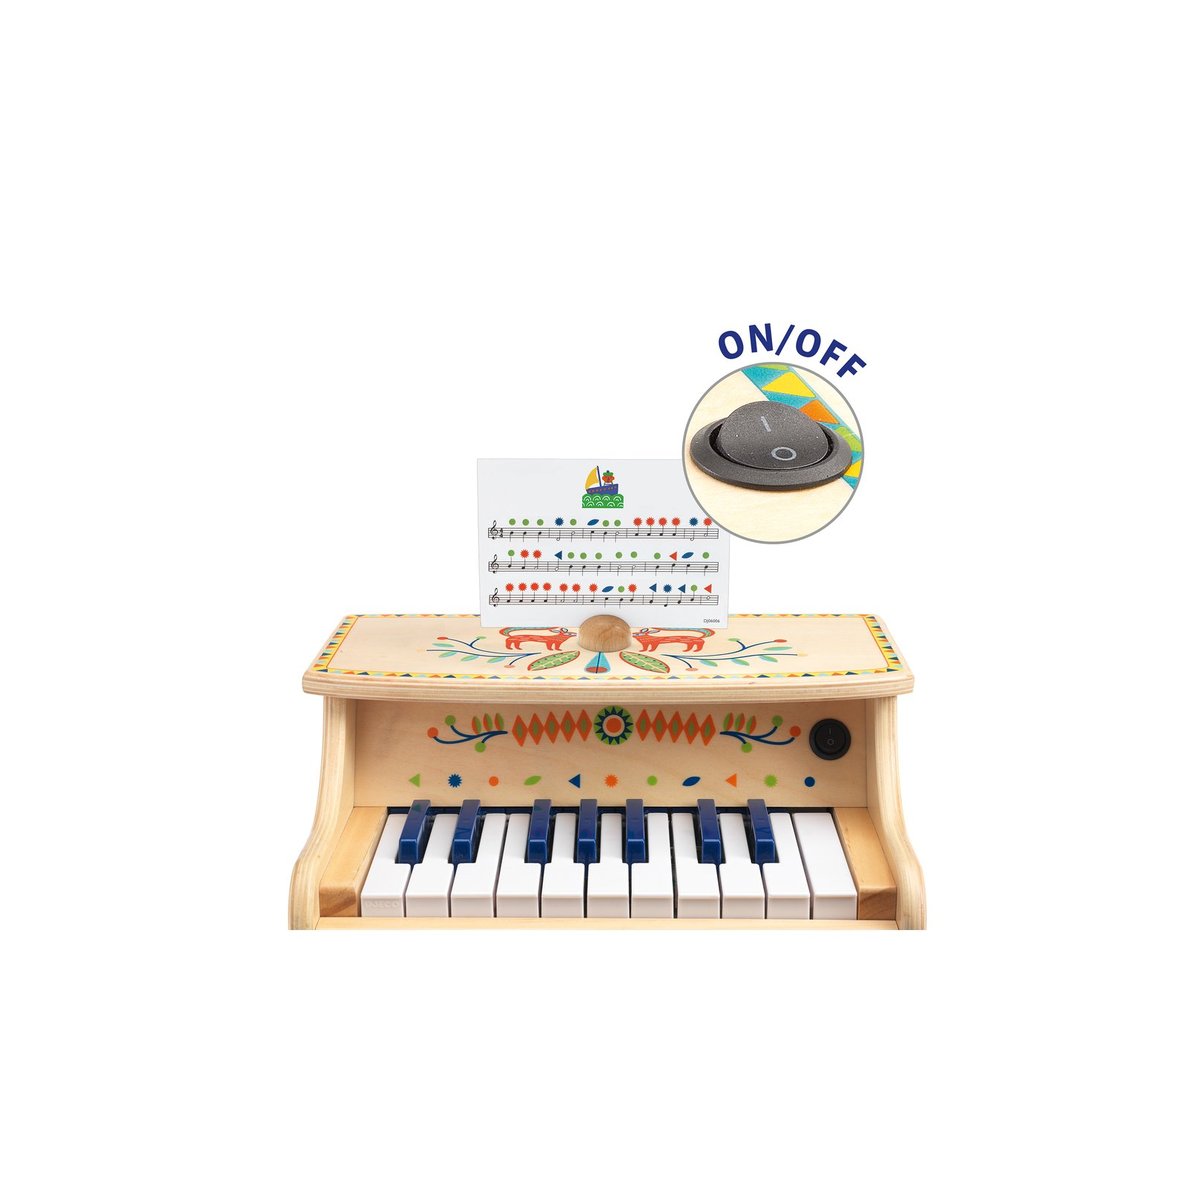 Batterie jouet en bois - Instruments de musique pour enfants NOIZIKIDZ